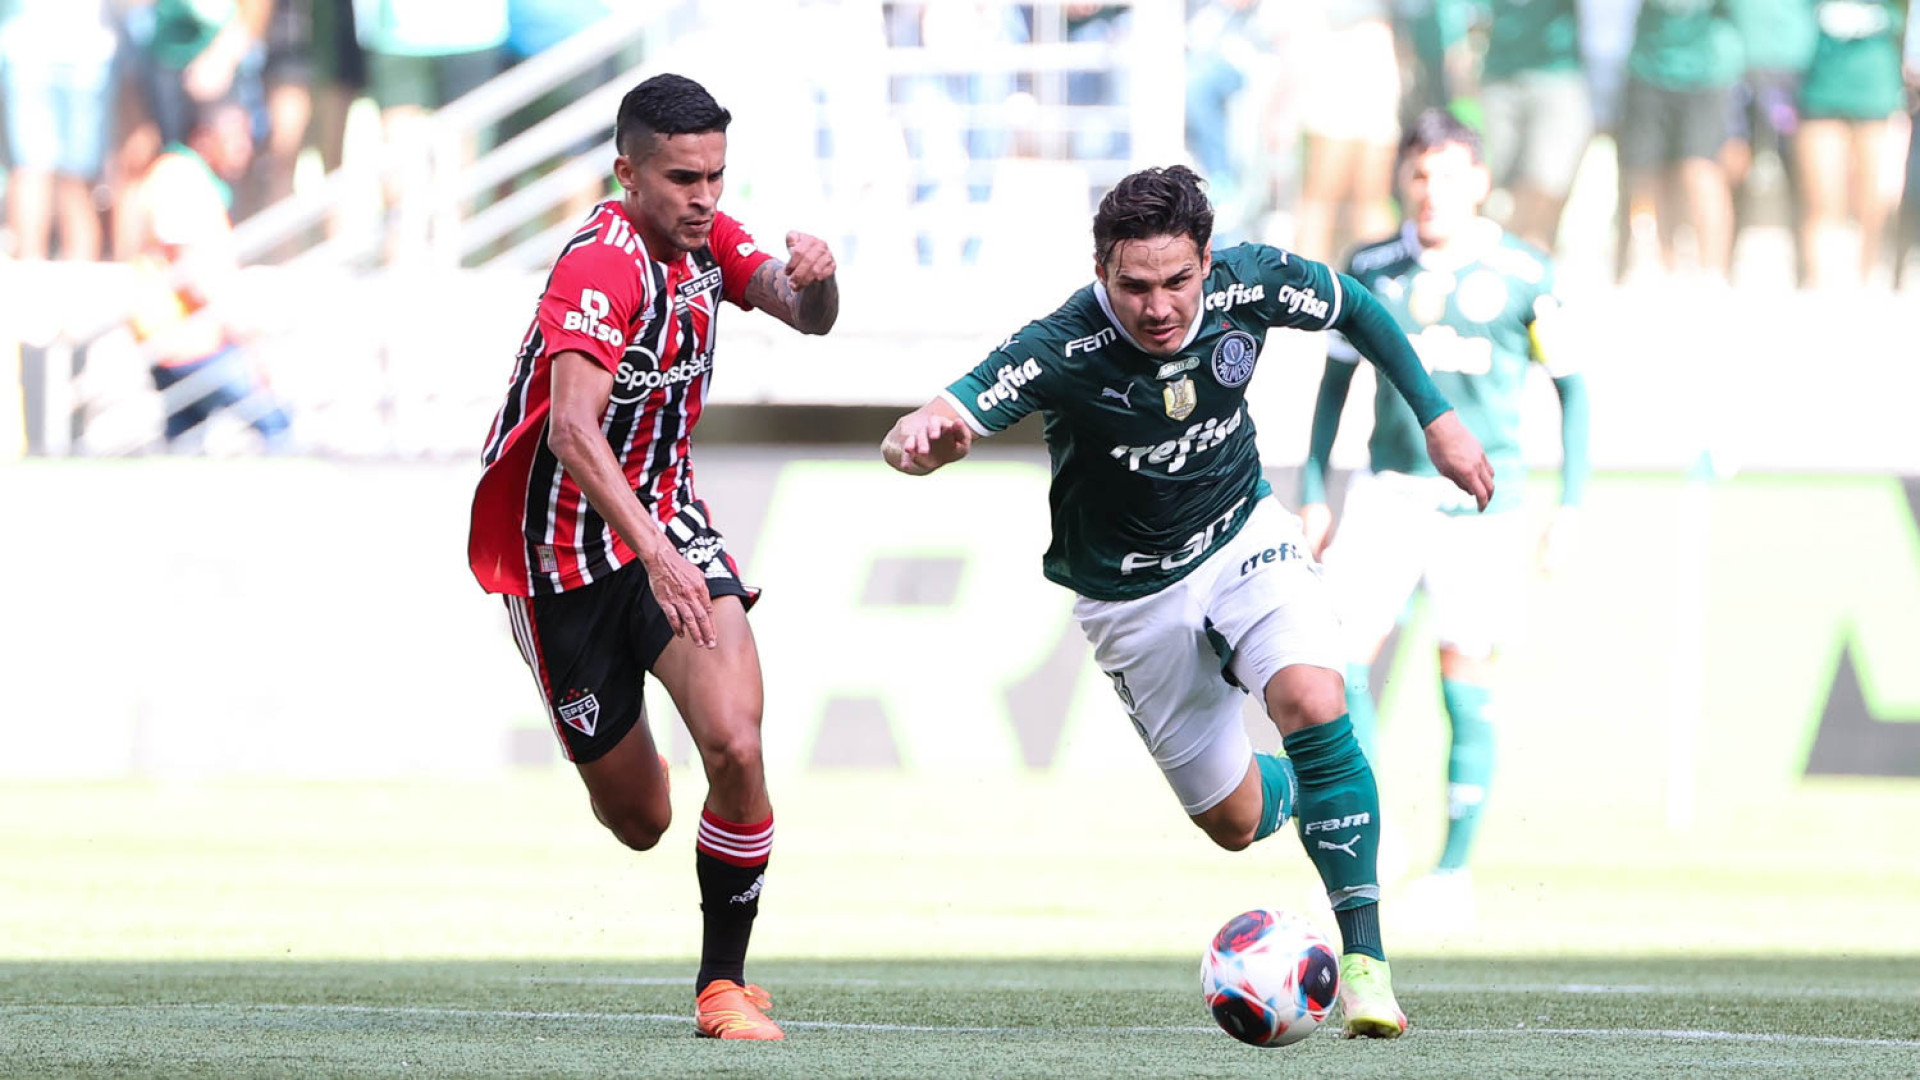 Palmeiras e São Paulo empatam sem gols no Allianz em clássico de futebol pobre